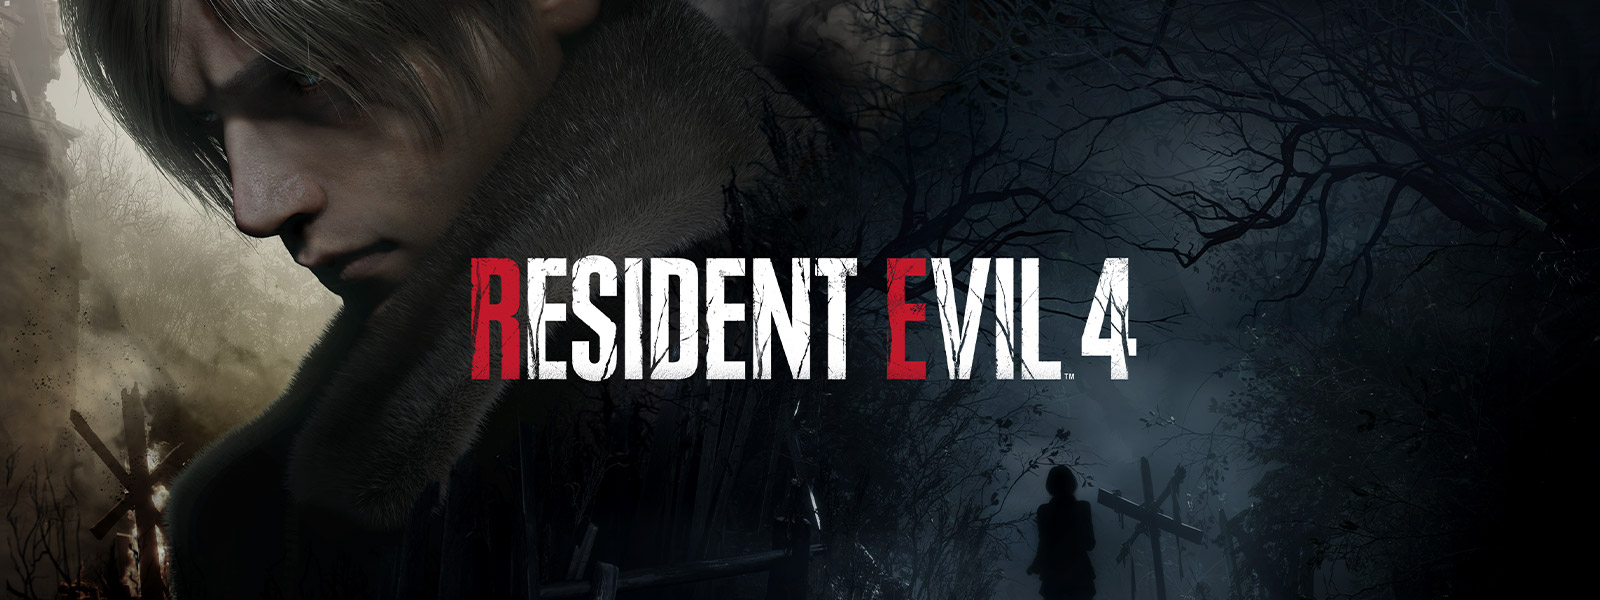 Resident Evil 4, Ein Mann mit grauem Haar wendet sich traurig ab, während eine Frau einen dunklen, unheimlichen Pfad in den Wald hinuntergeht.